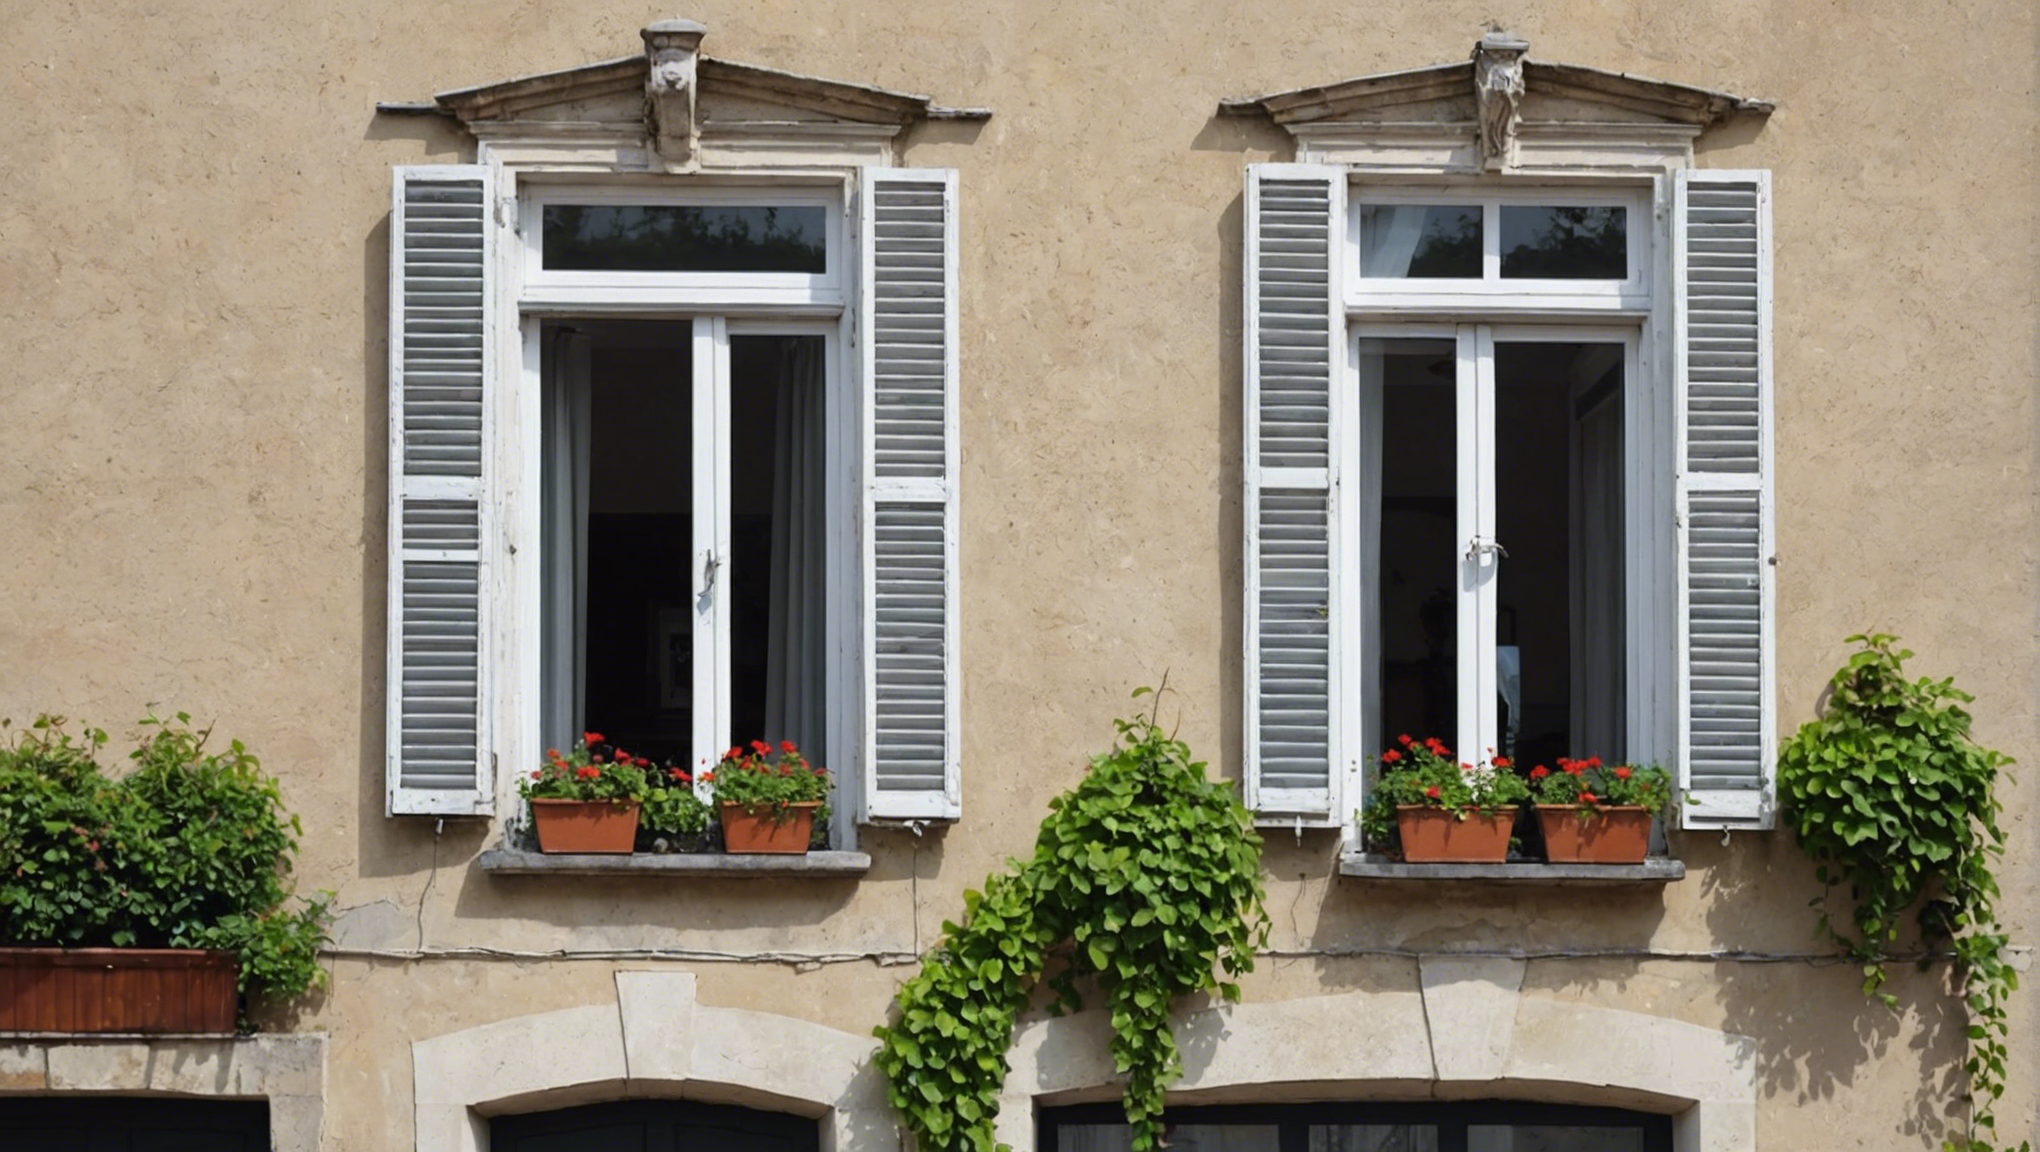 découvrez comment obtenir votre prime rénov pour vos fenêtres et améliorer l'efficacité énergétique de votre logement.